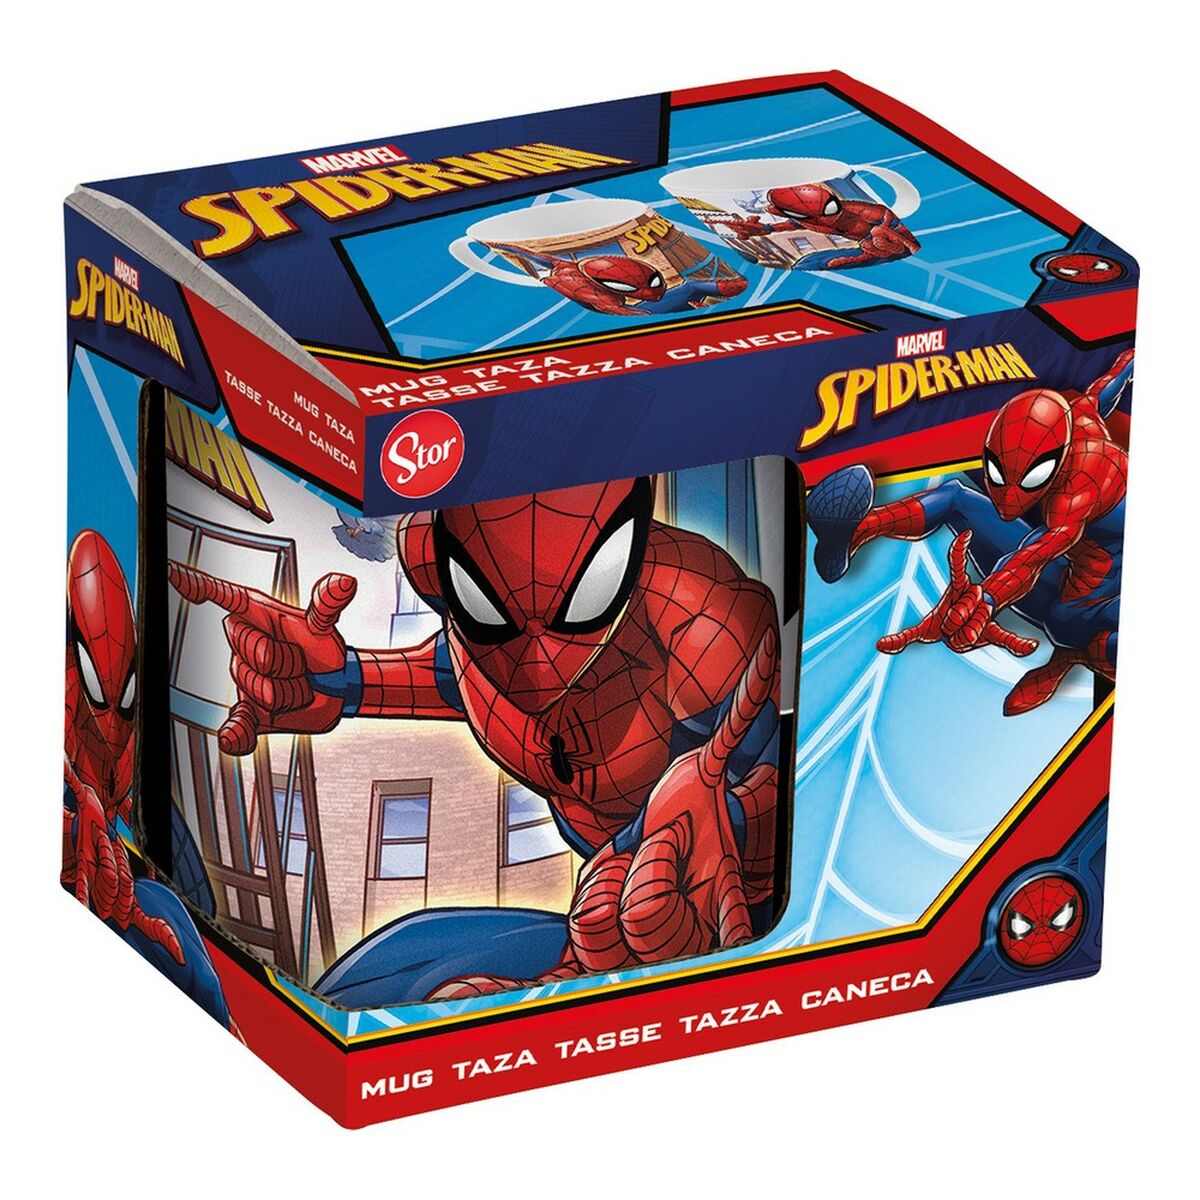 Mok Spider-Man Great power Blauw Rood Keramisch 350 ml